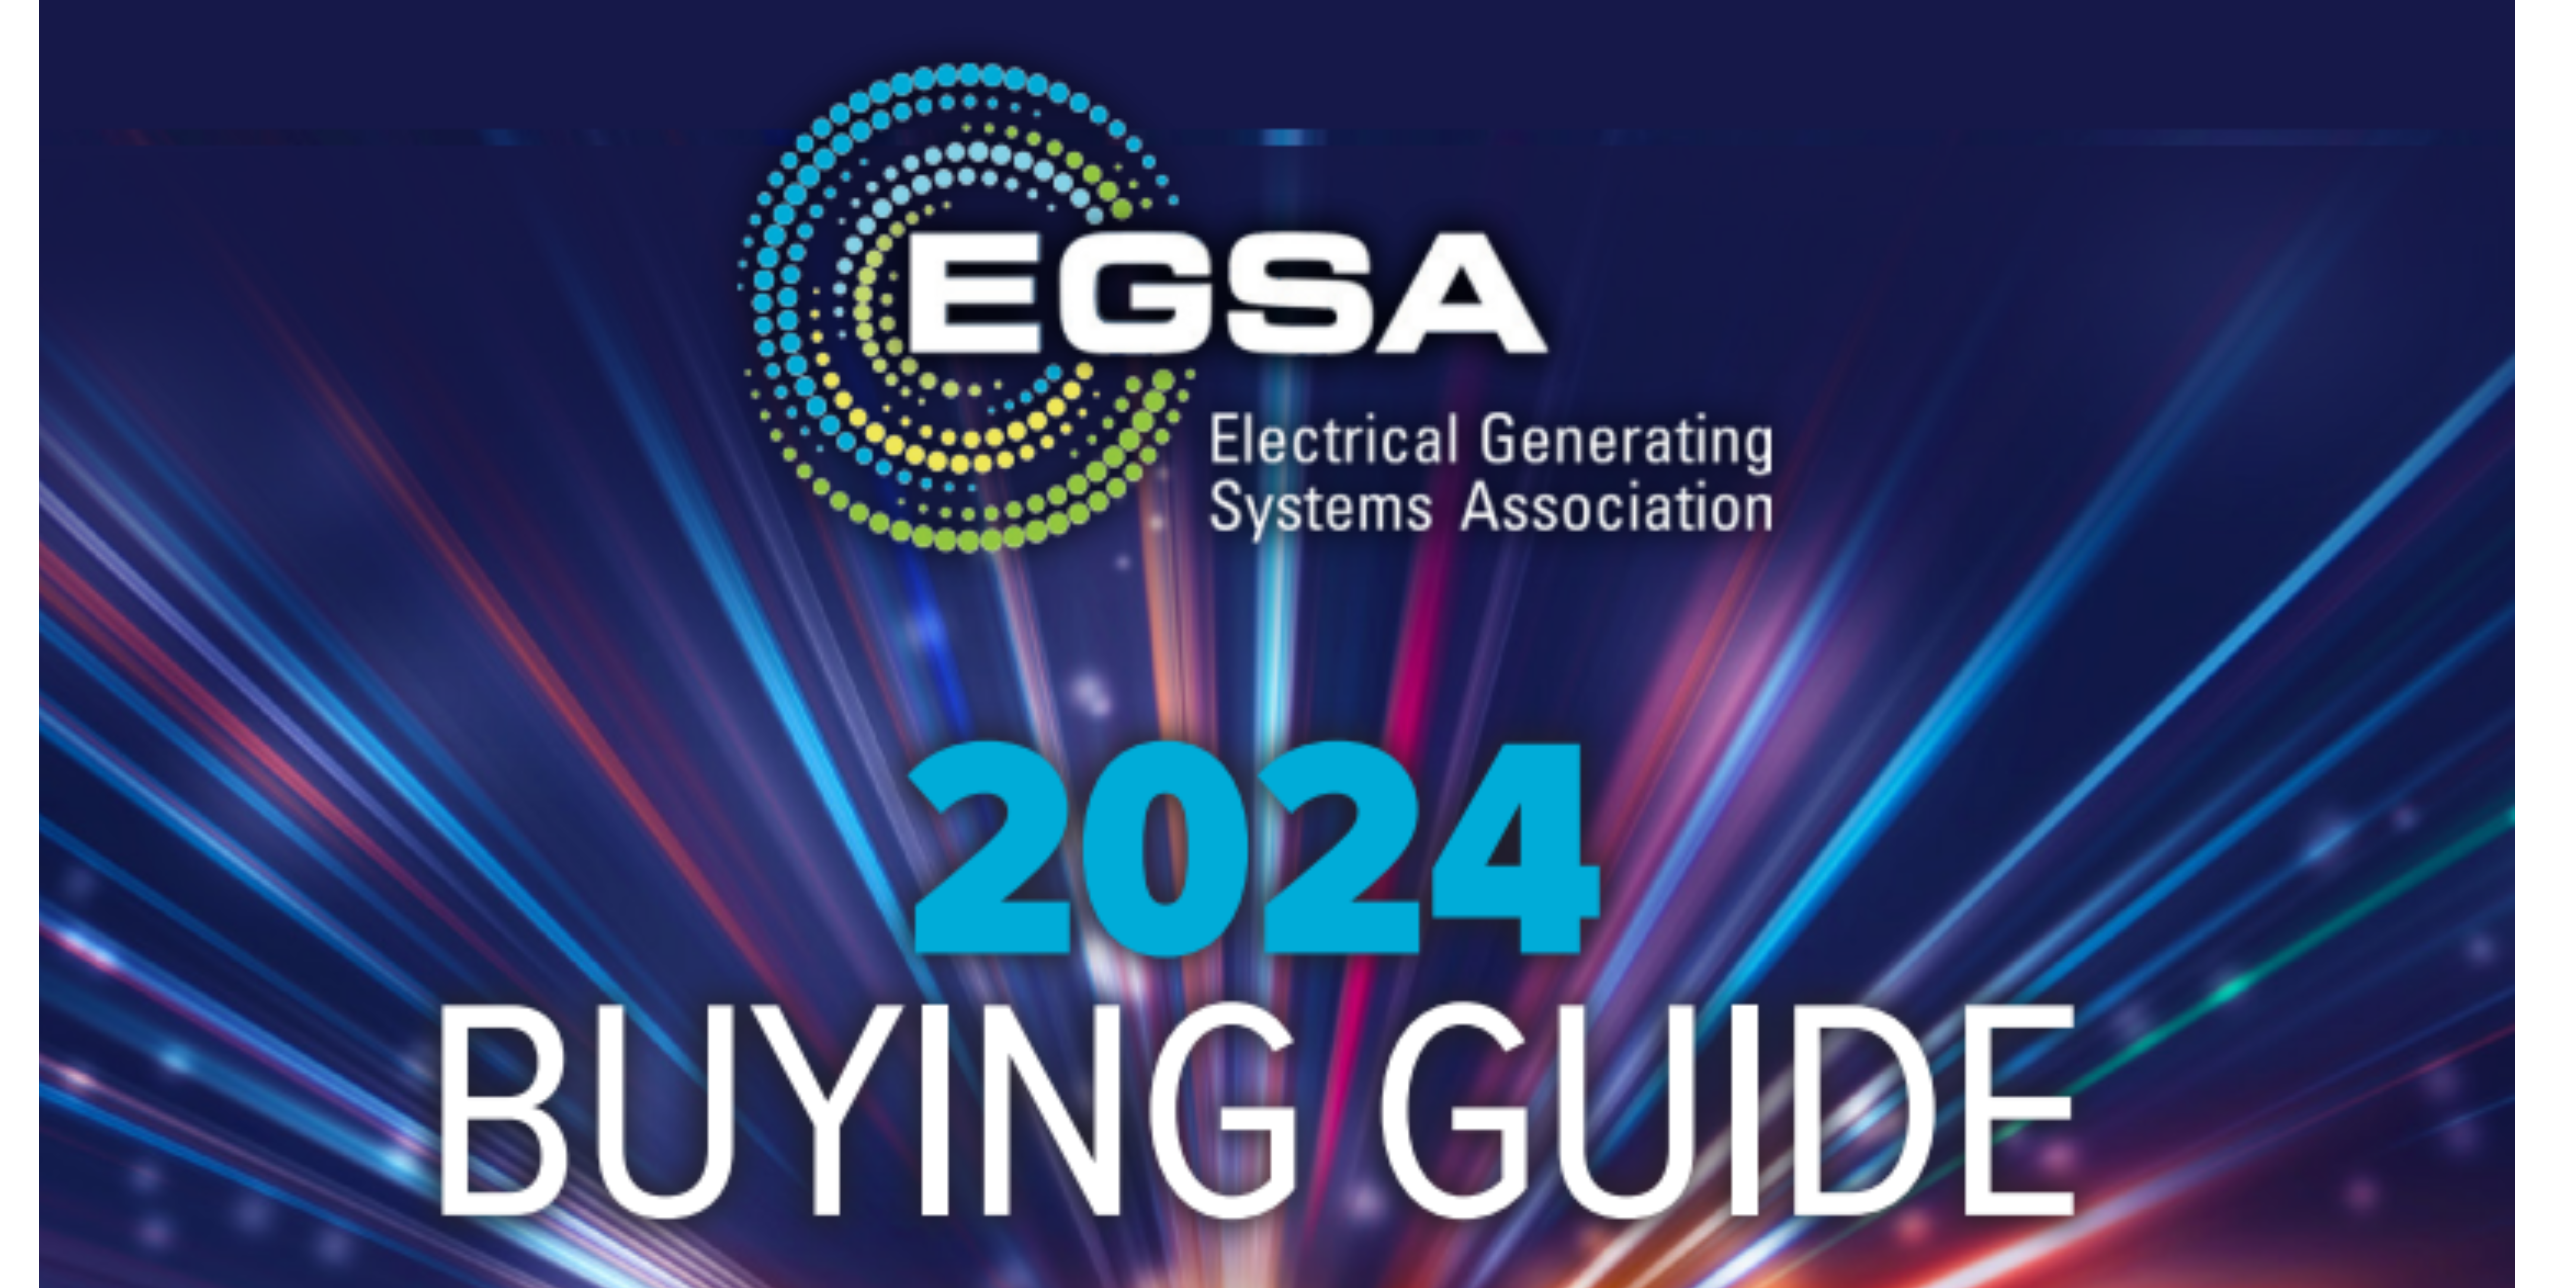 EGSA Buying Guide